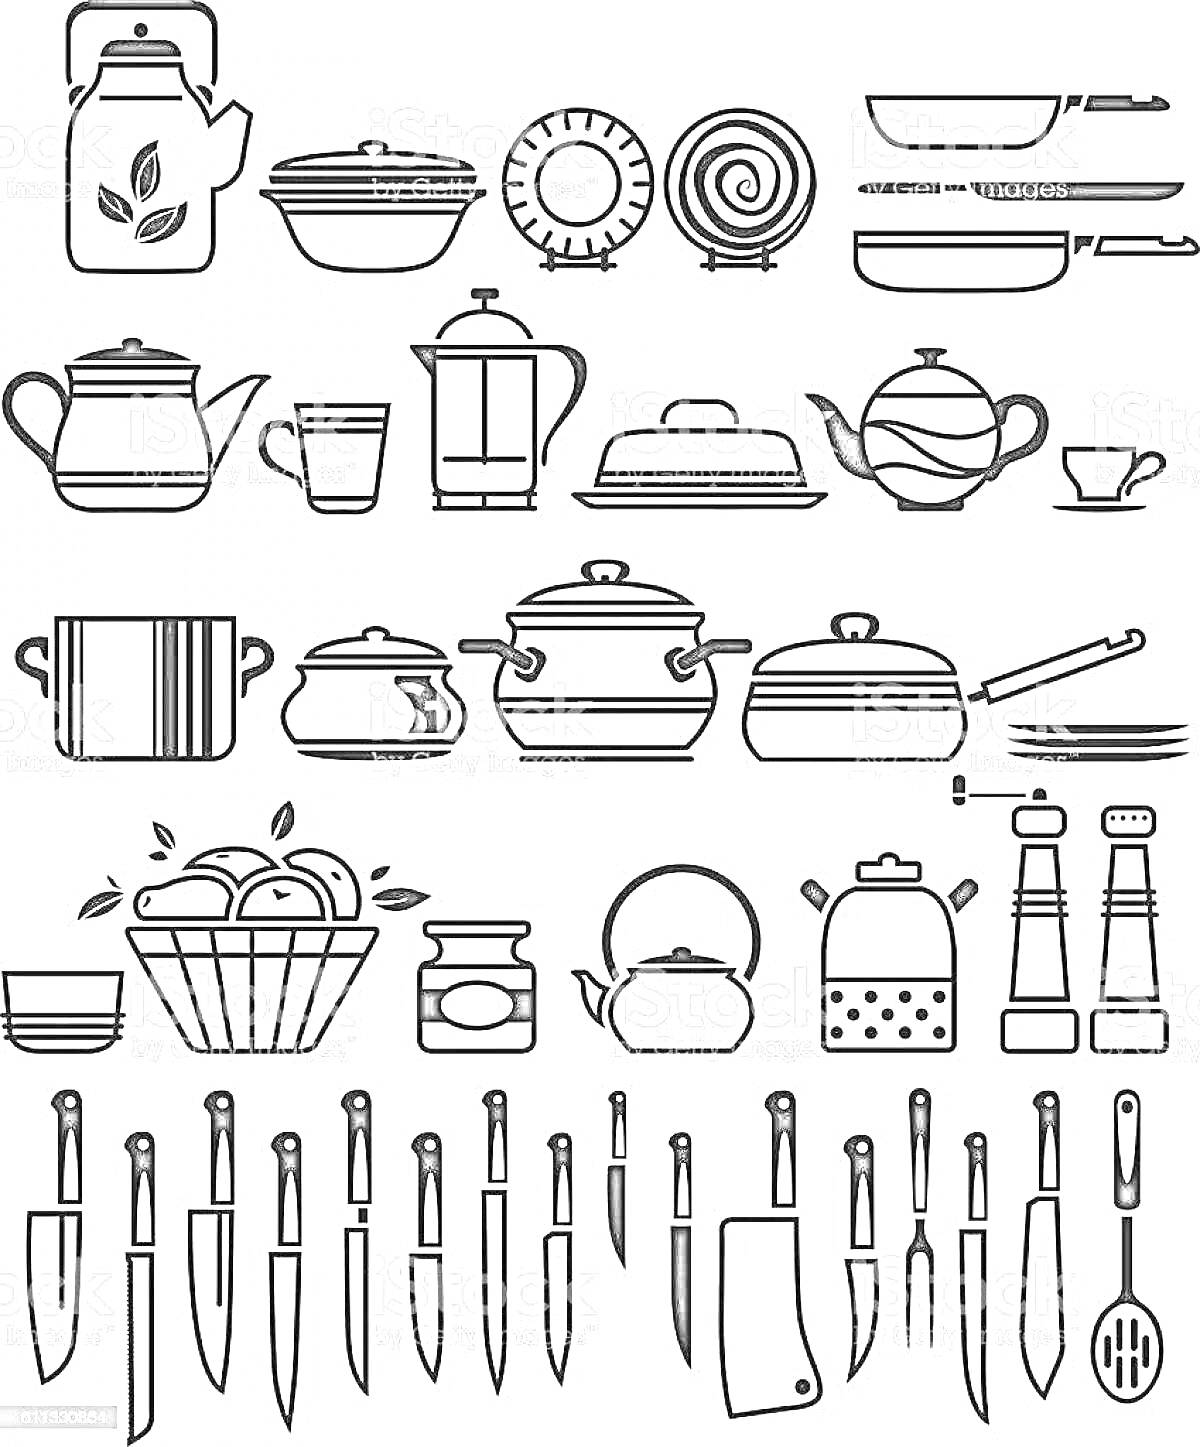 Раскраска Набор столовой посуды, включающий чайник, миску с крышкой, тарелку с узором, сковородки, кувшин, стакан, кофейный пресс, чайник с полосками, маленькую чашку, разделочную доску, кастрюли, нож для масла, поварешку, миску для фруктов, банку, чайник с овально